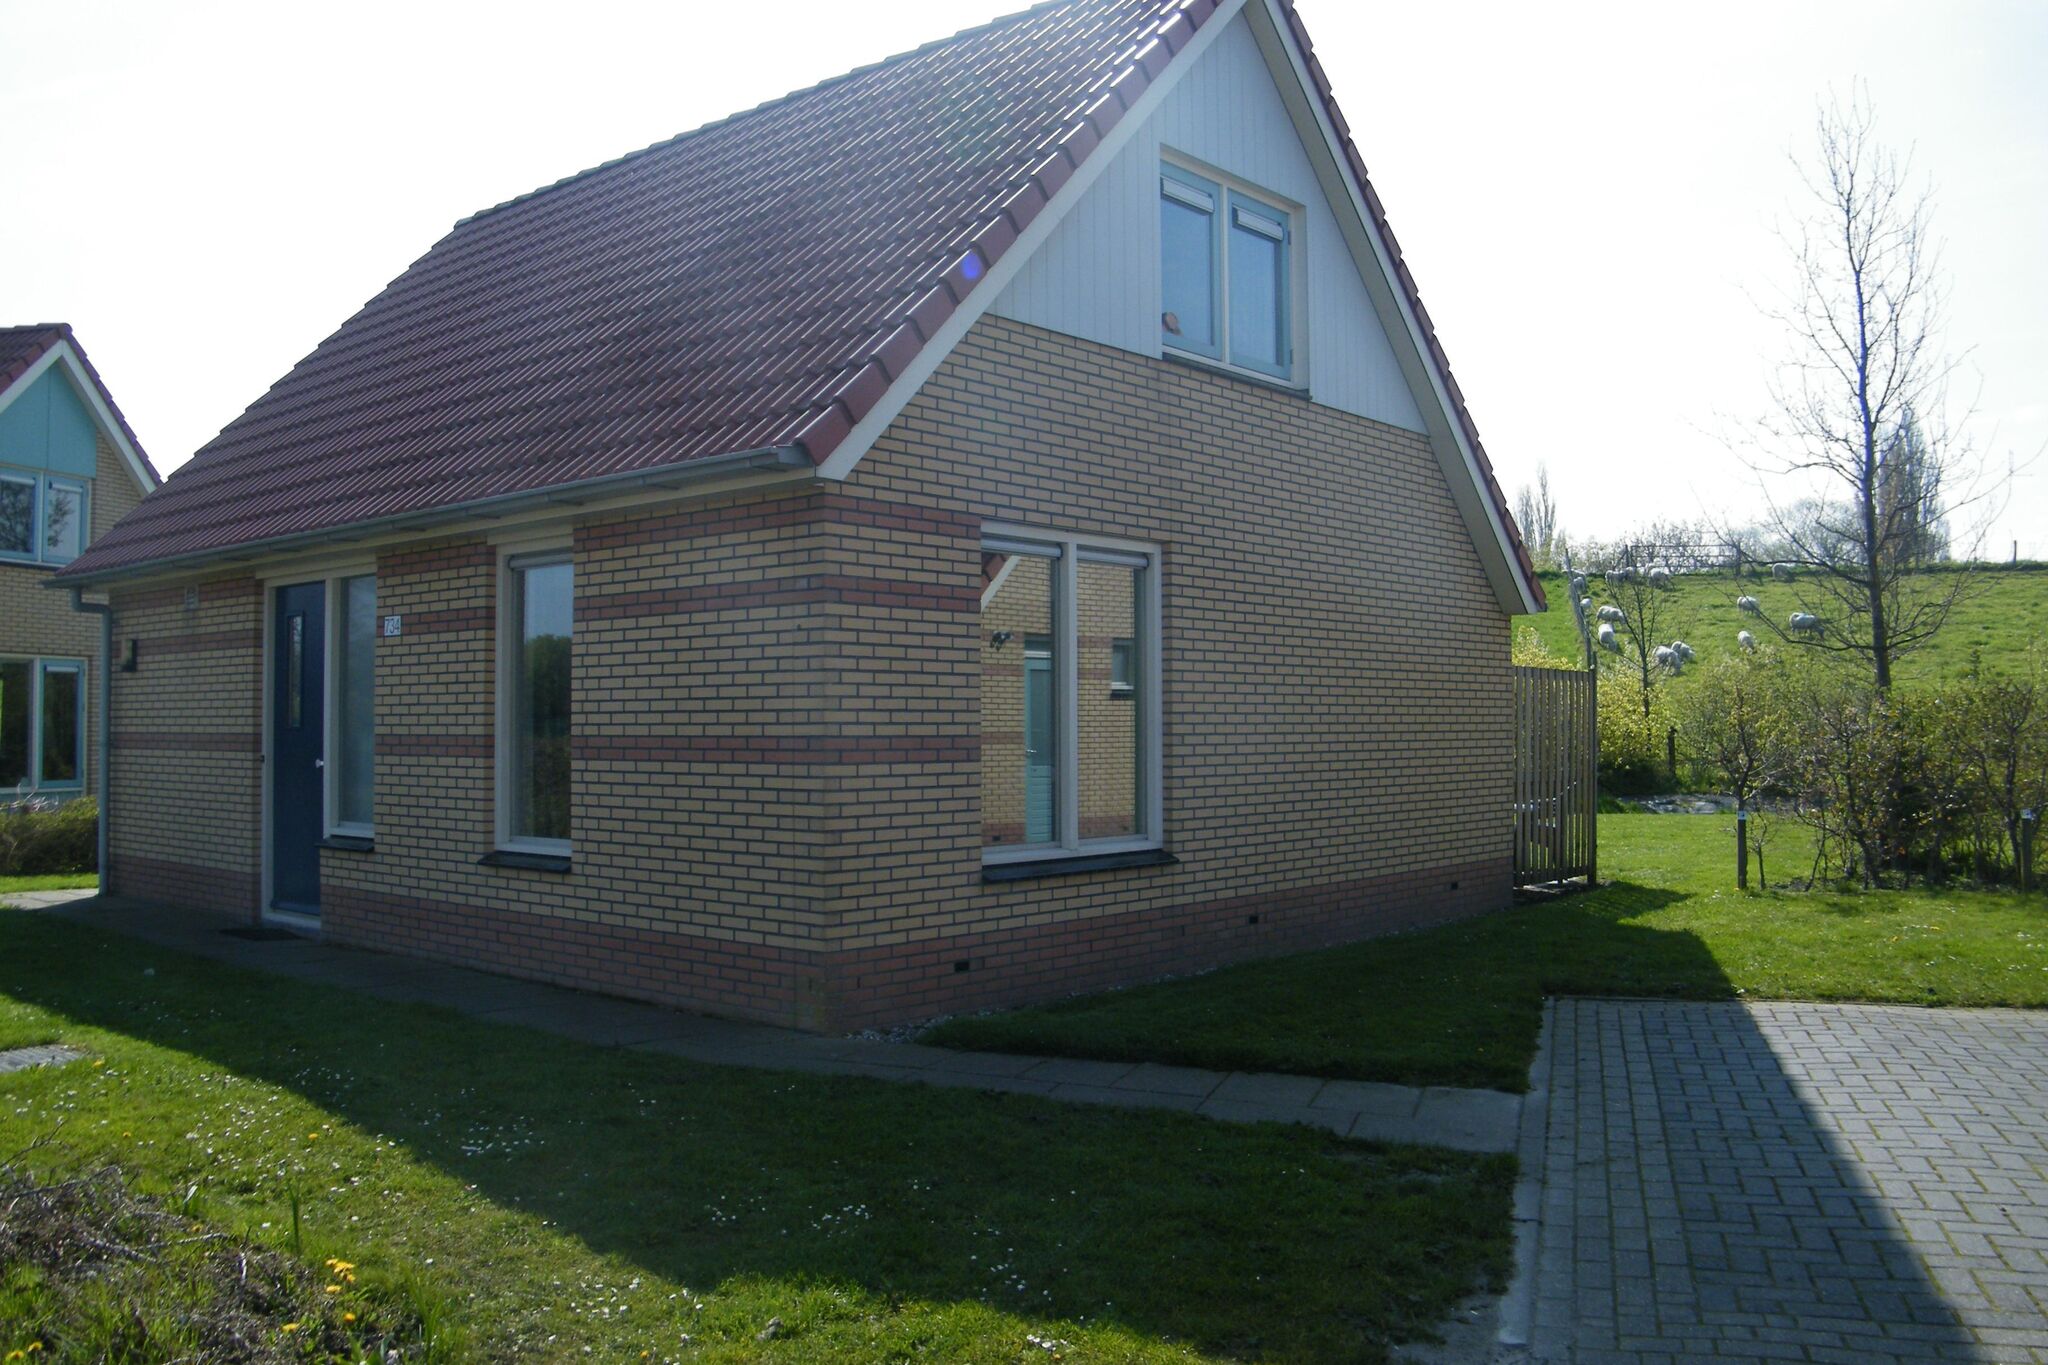 Haus mit Geschirrspüler, 19 km. Van Hoorn